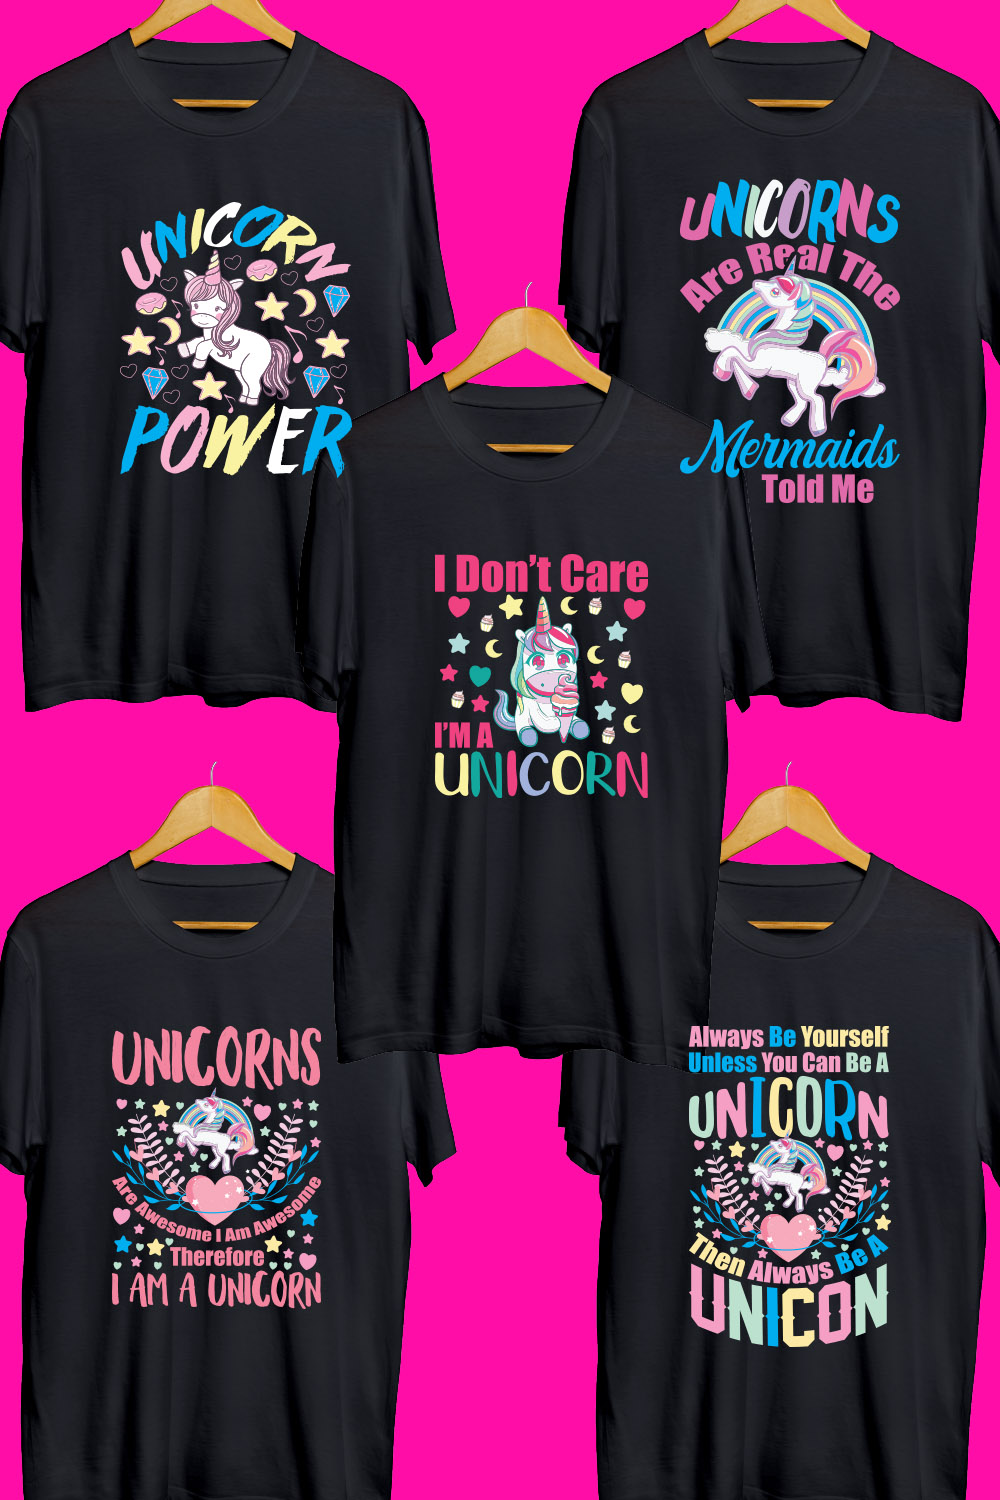 Unicorn T Shirt Designs Bundle pinterest preview image.